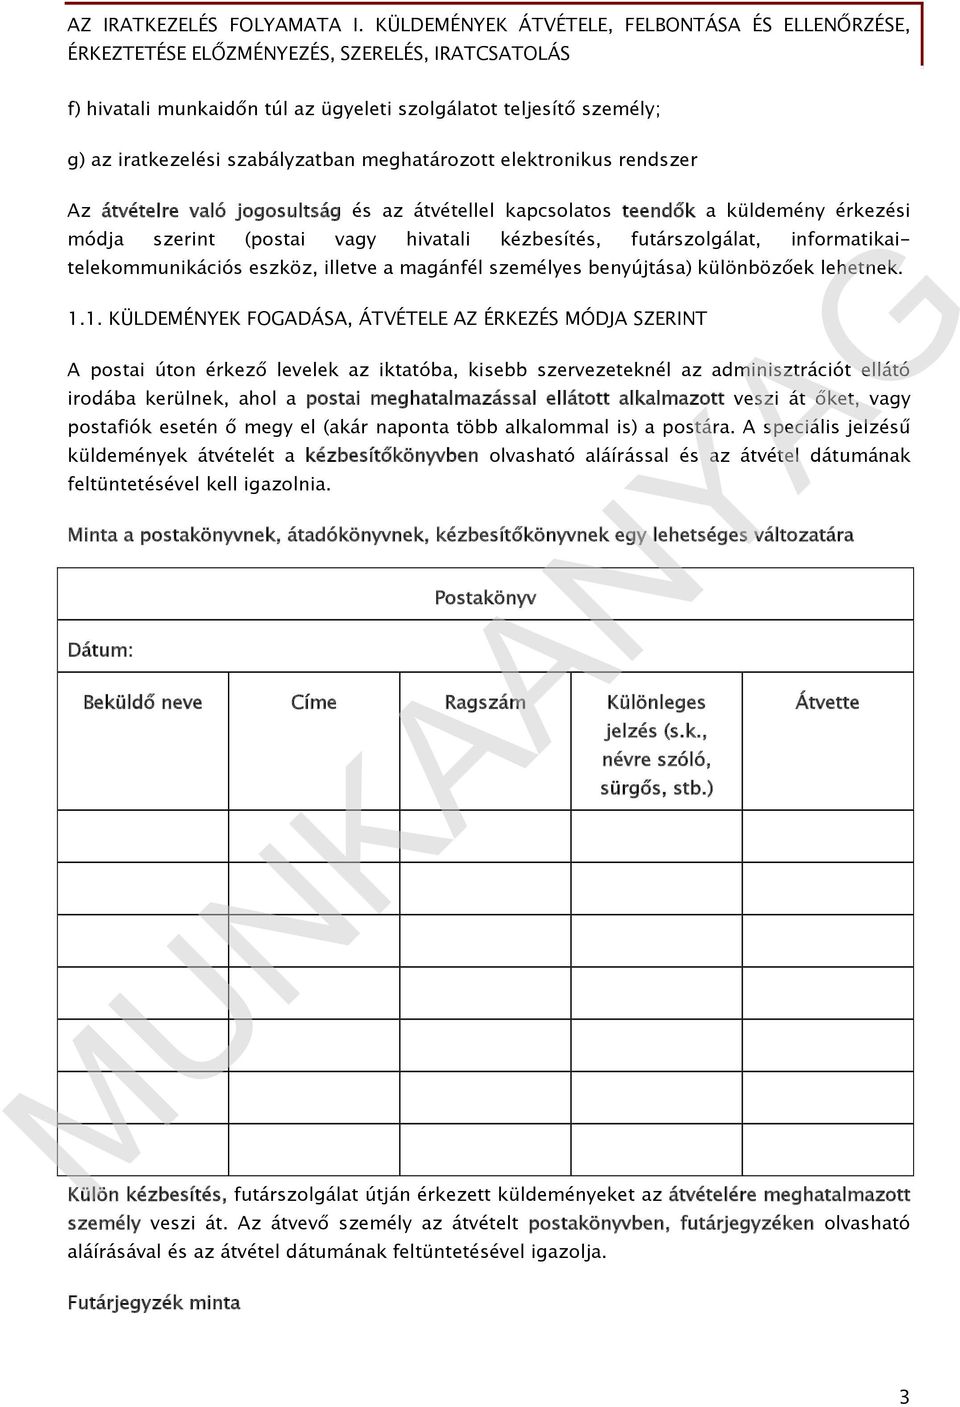 Az iratkezelés folyamata I. Küldemények átvétele, felbontása és  ellenőrzése, érkeztetése Előzményezés, szerelés, iratcsatolás - PDF Free  Download